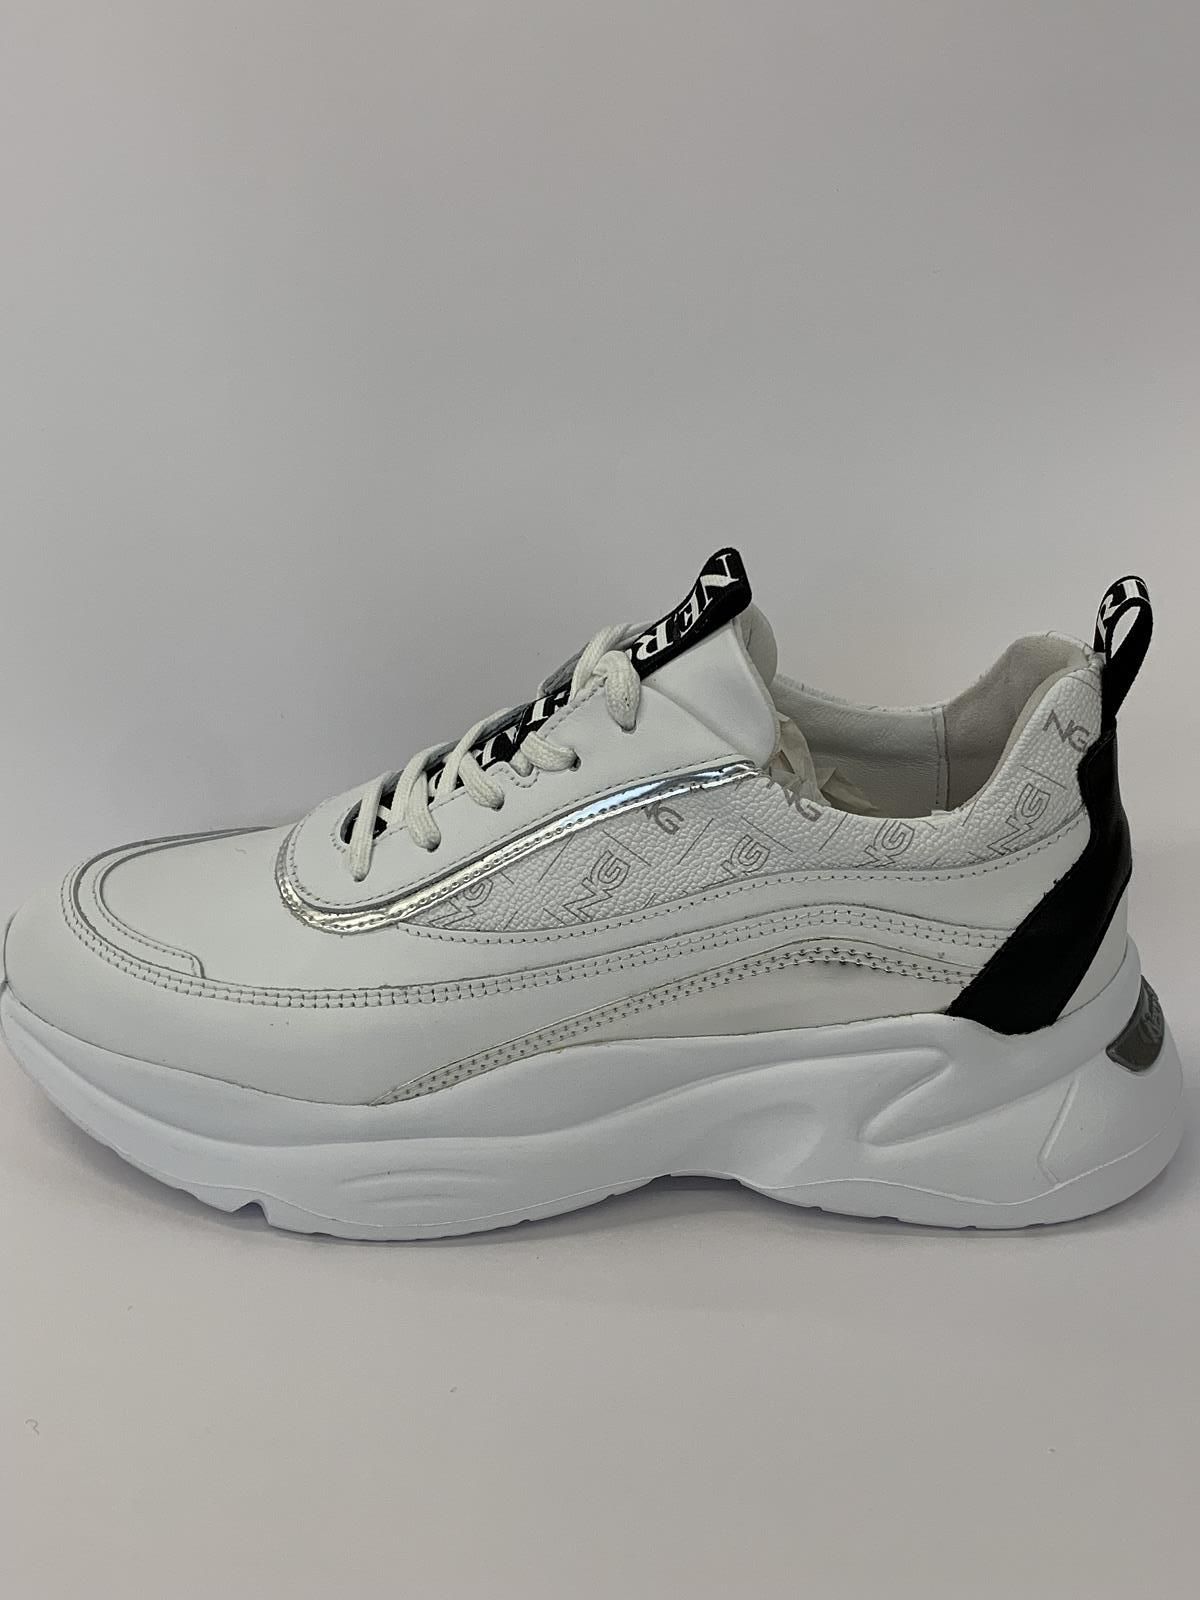 Nero Giardini Sneaker Zwart/Wit dames (Sneaker Trendy Lint - 8031) - Schoenen Luca